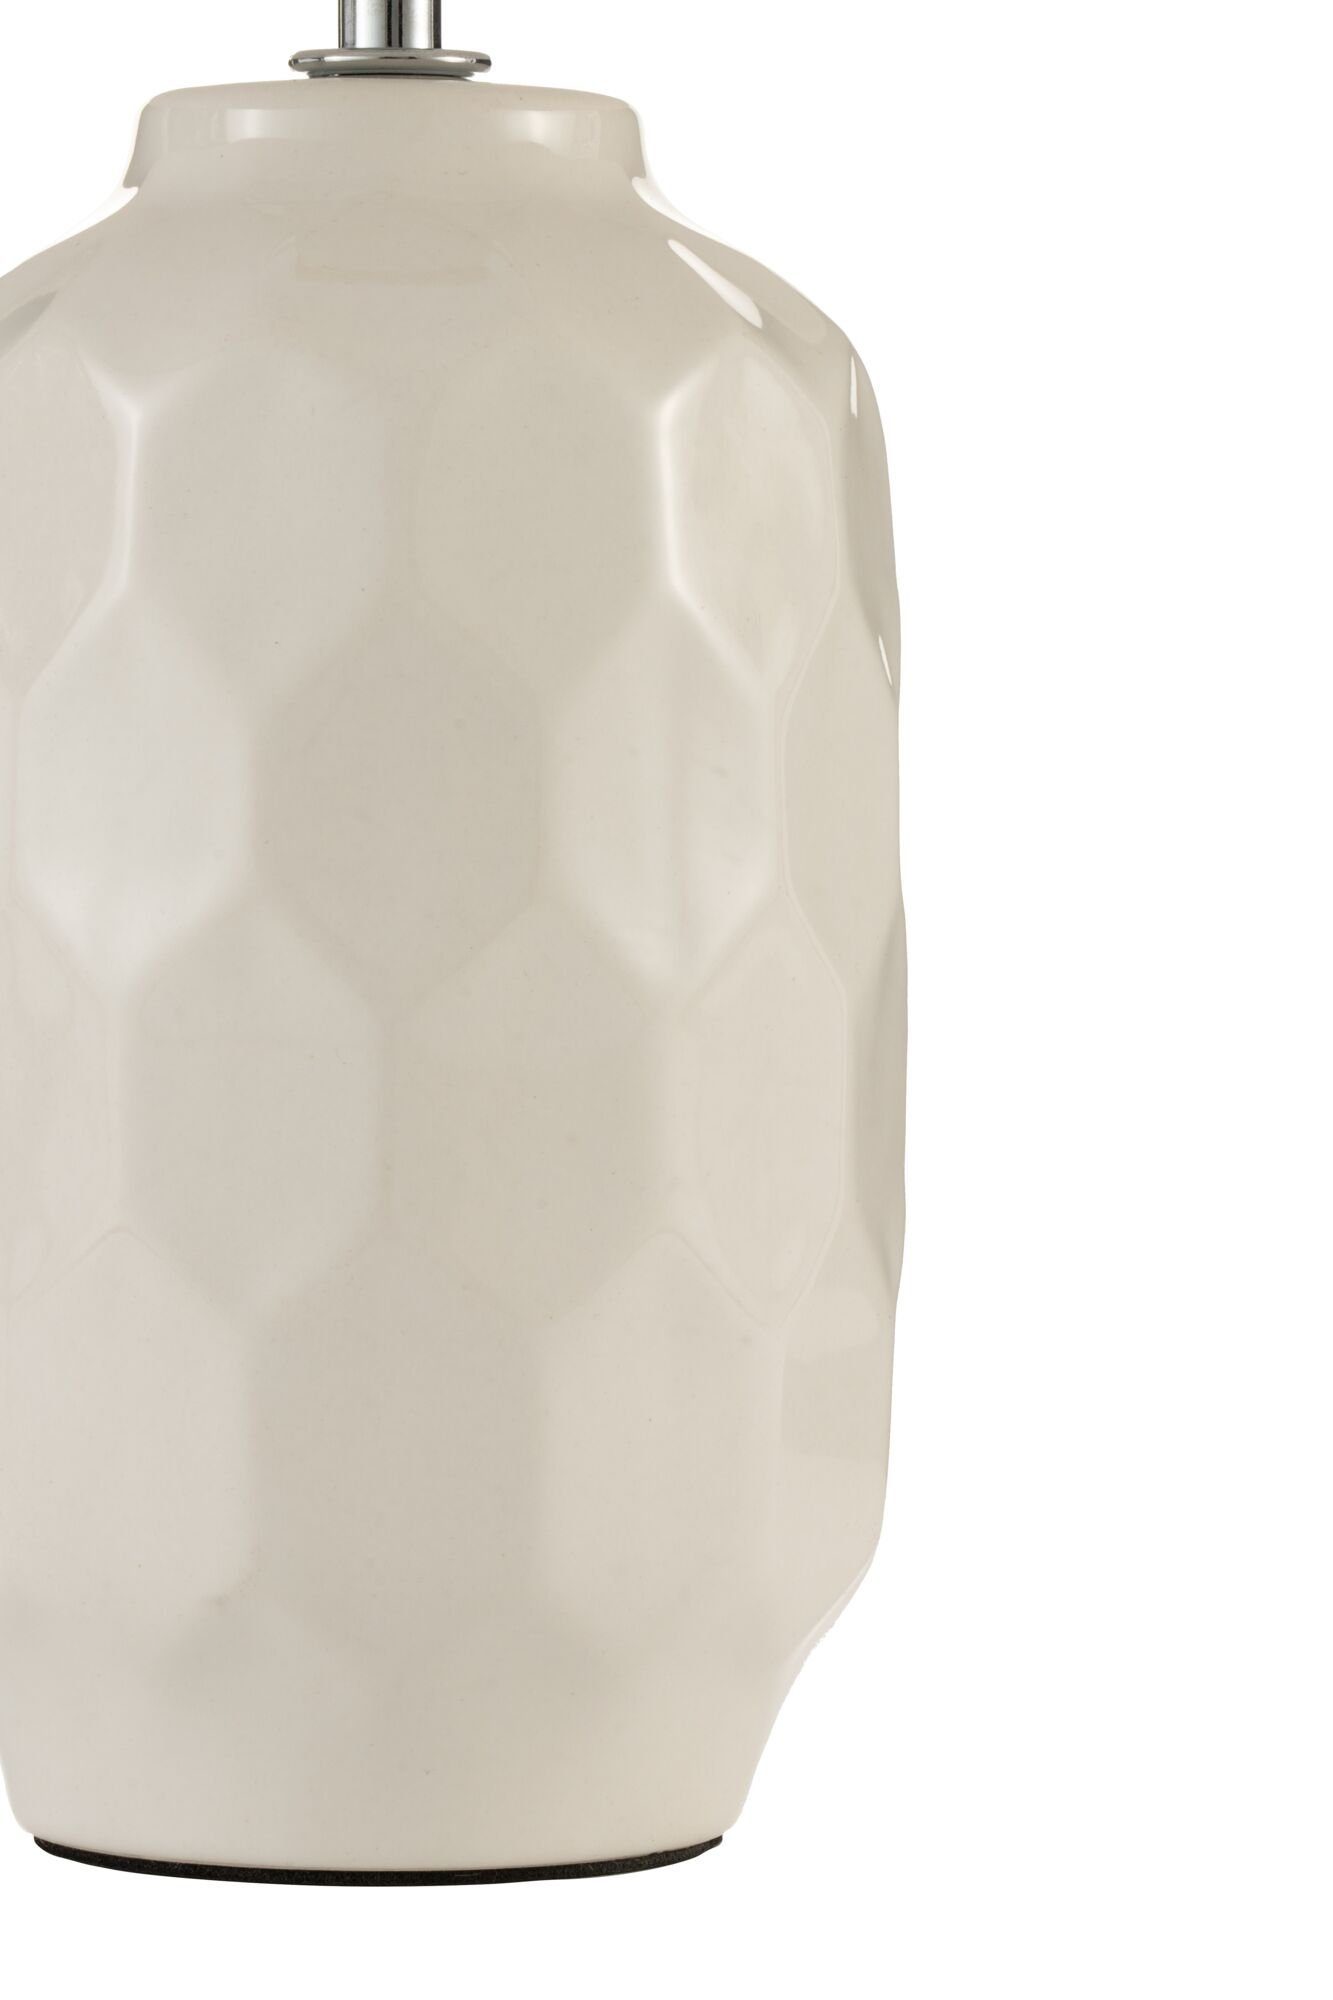 Pauleen Tischleuchte Charming ohne Leuchtmittel, max.20W Sparkle Crème Stoff/Keramik, E14